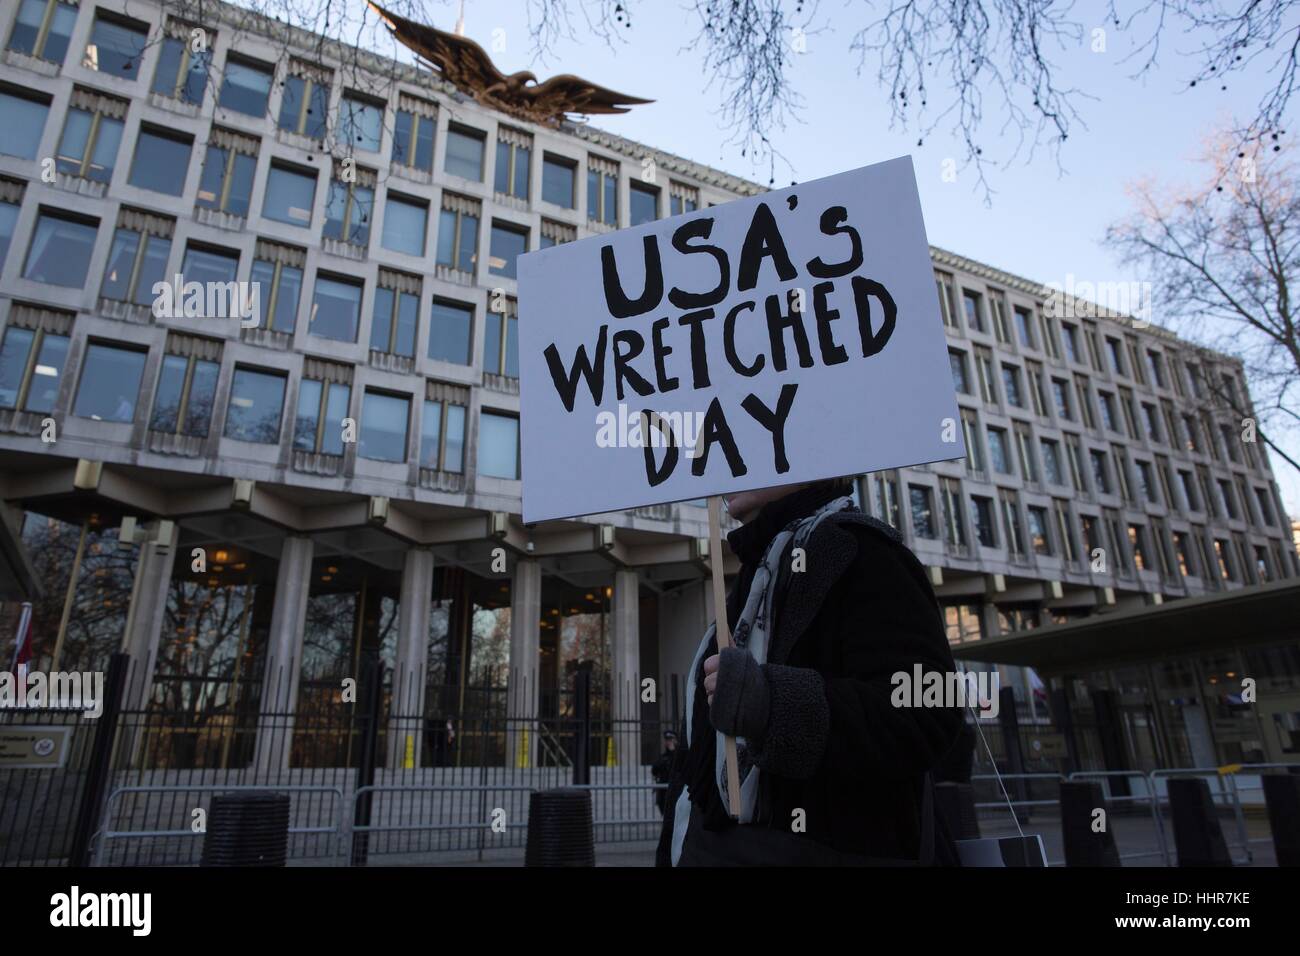 Londres, Reino Unido. 20 ene, 2017. Protesta Anti-Trump Embajada, Grosvenor Square, Londres, Reino Unido. esta noche la protesta contra la inauguración del presidente estadounidense Donald Trump fuera de la embajada estadounidense en Londres Foto de stock